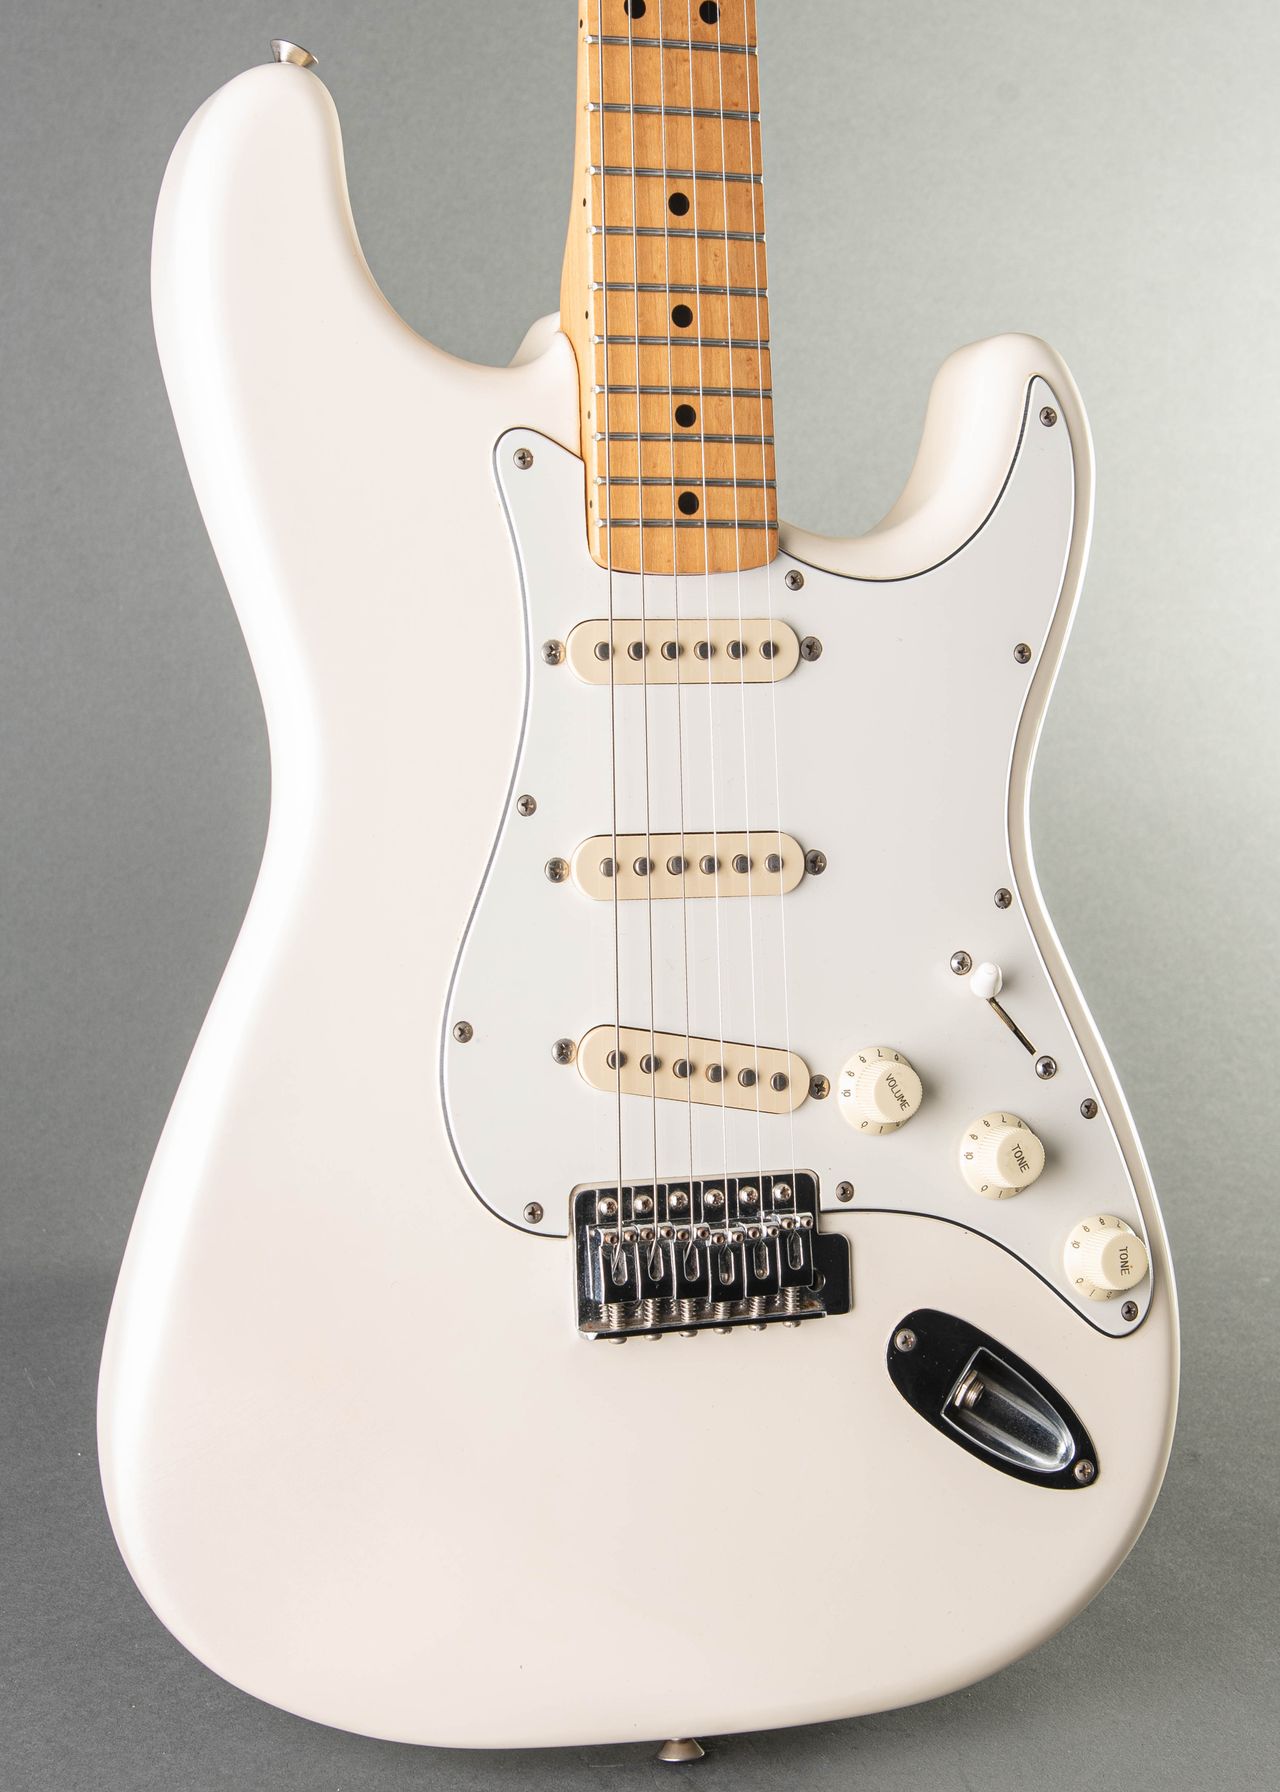 servant Scrutiny Postscript Fender American Standard Stratocaster 1989, White | Carter Vintage Guitars